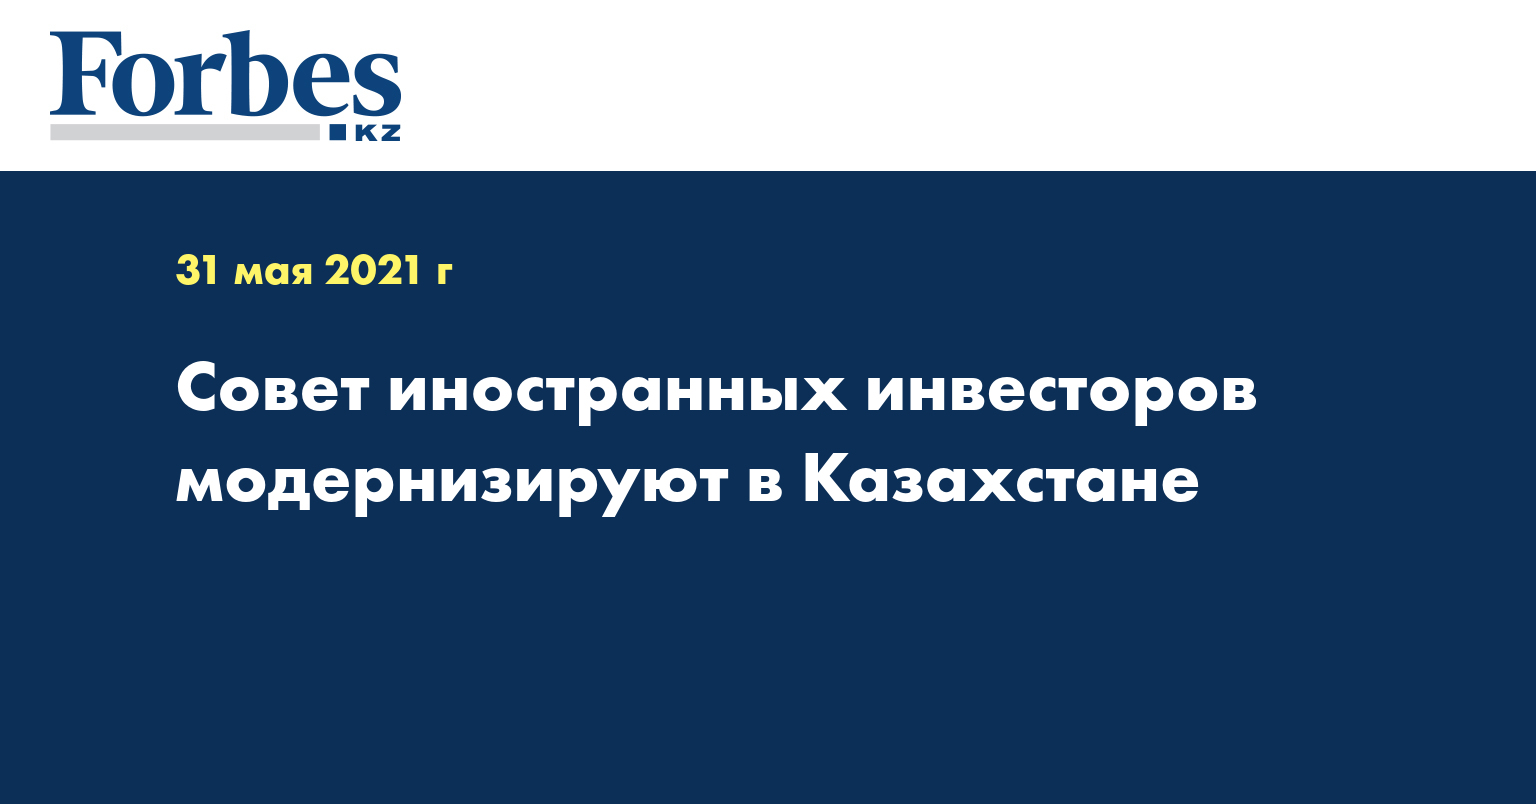  Совет иностранных инвесторов модернизируют в Казахстане